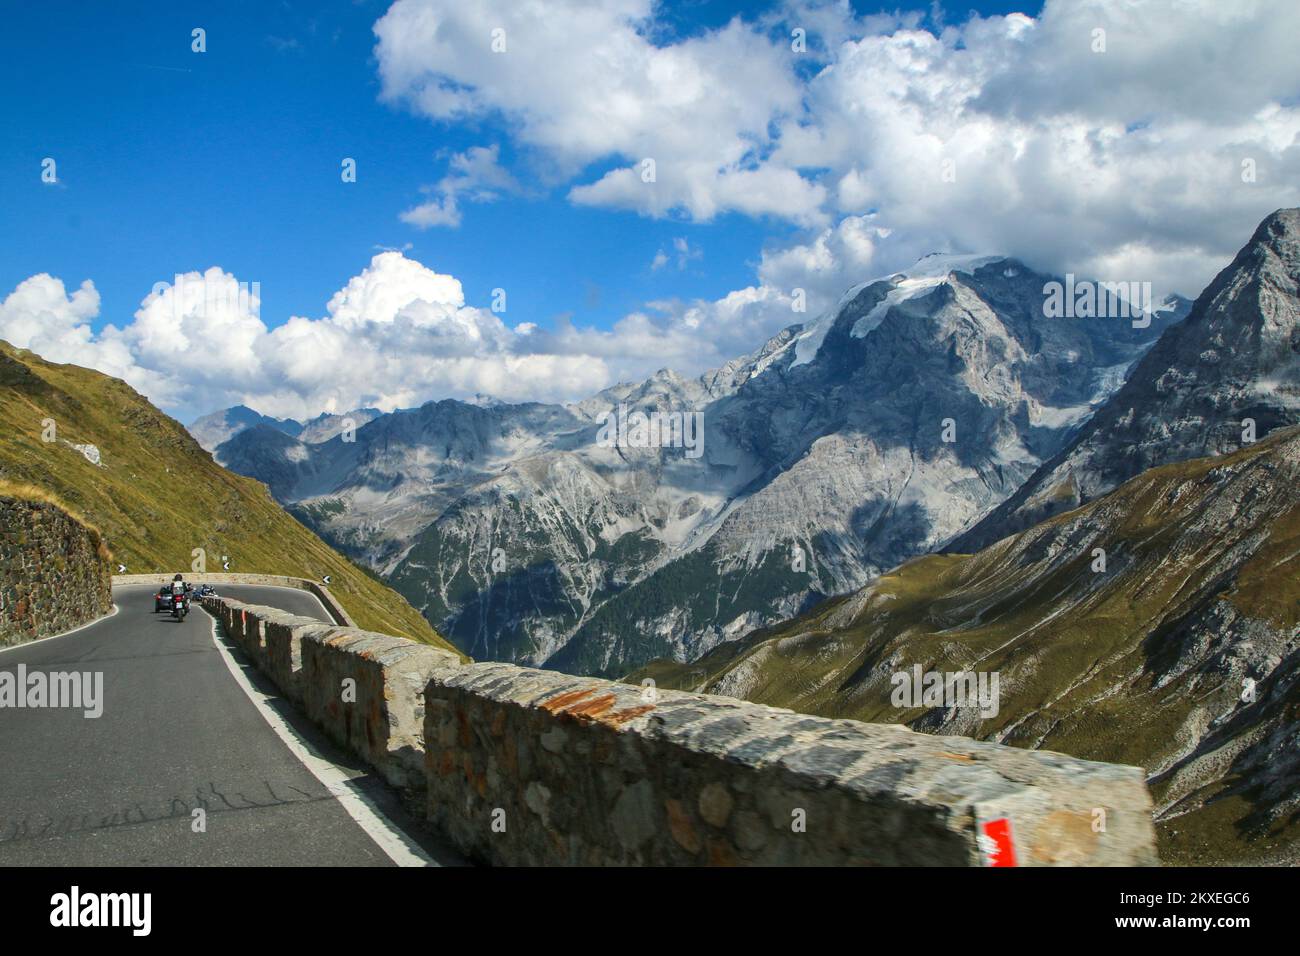 Die Fahrt durch die Haarnadeln der anspruchsvollen Straßen entlang des berühmten Stelvio-Passes in den italienischen Alpen, in der Nähe der Schweiz. Stockfoto